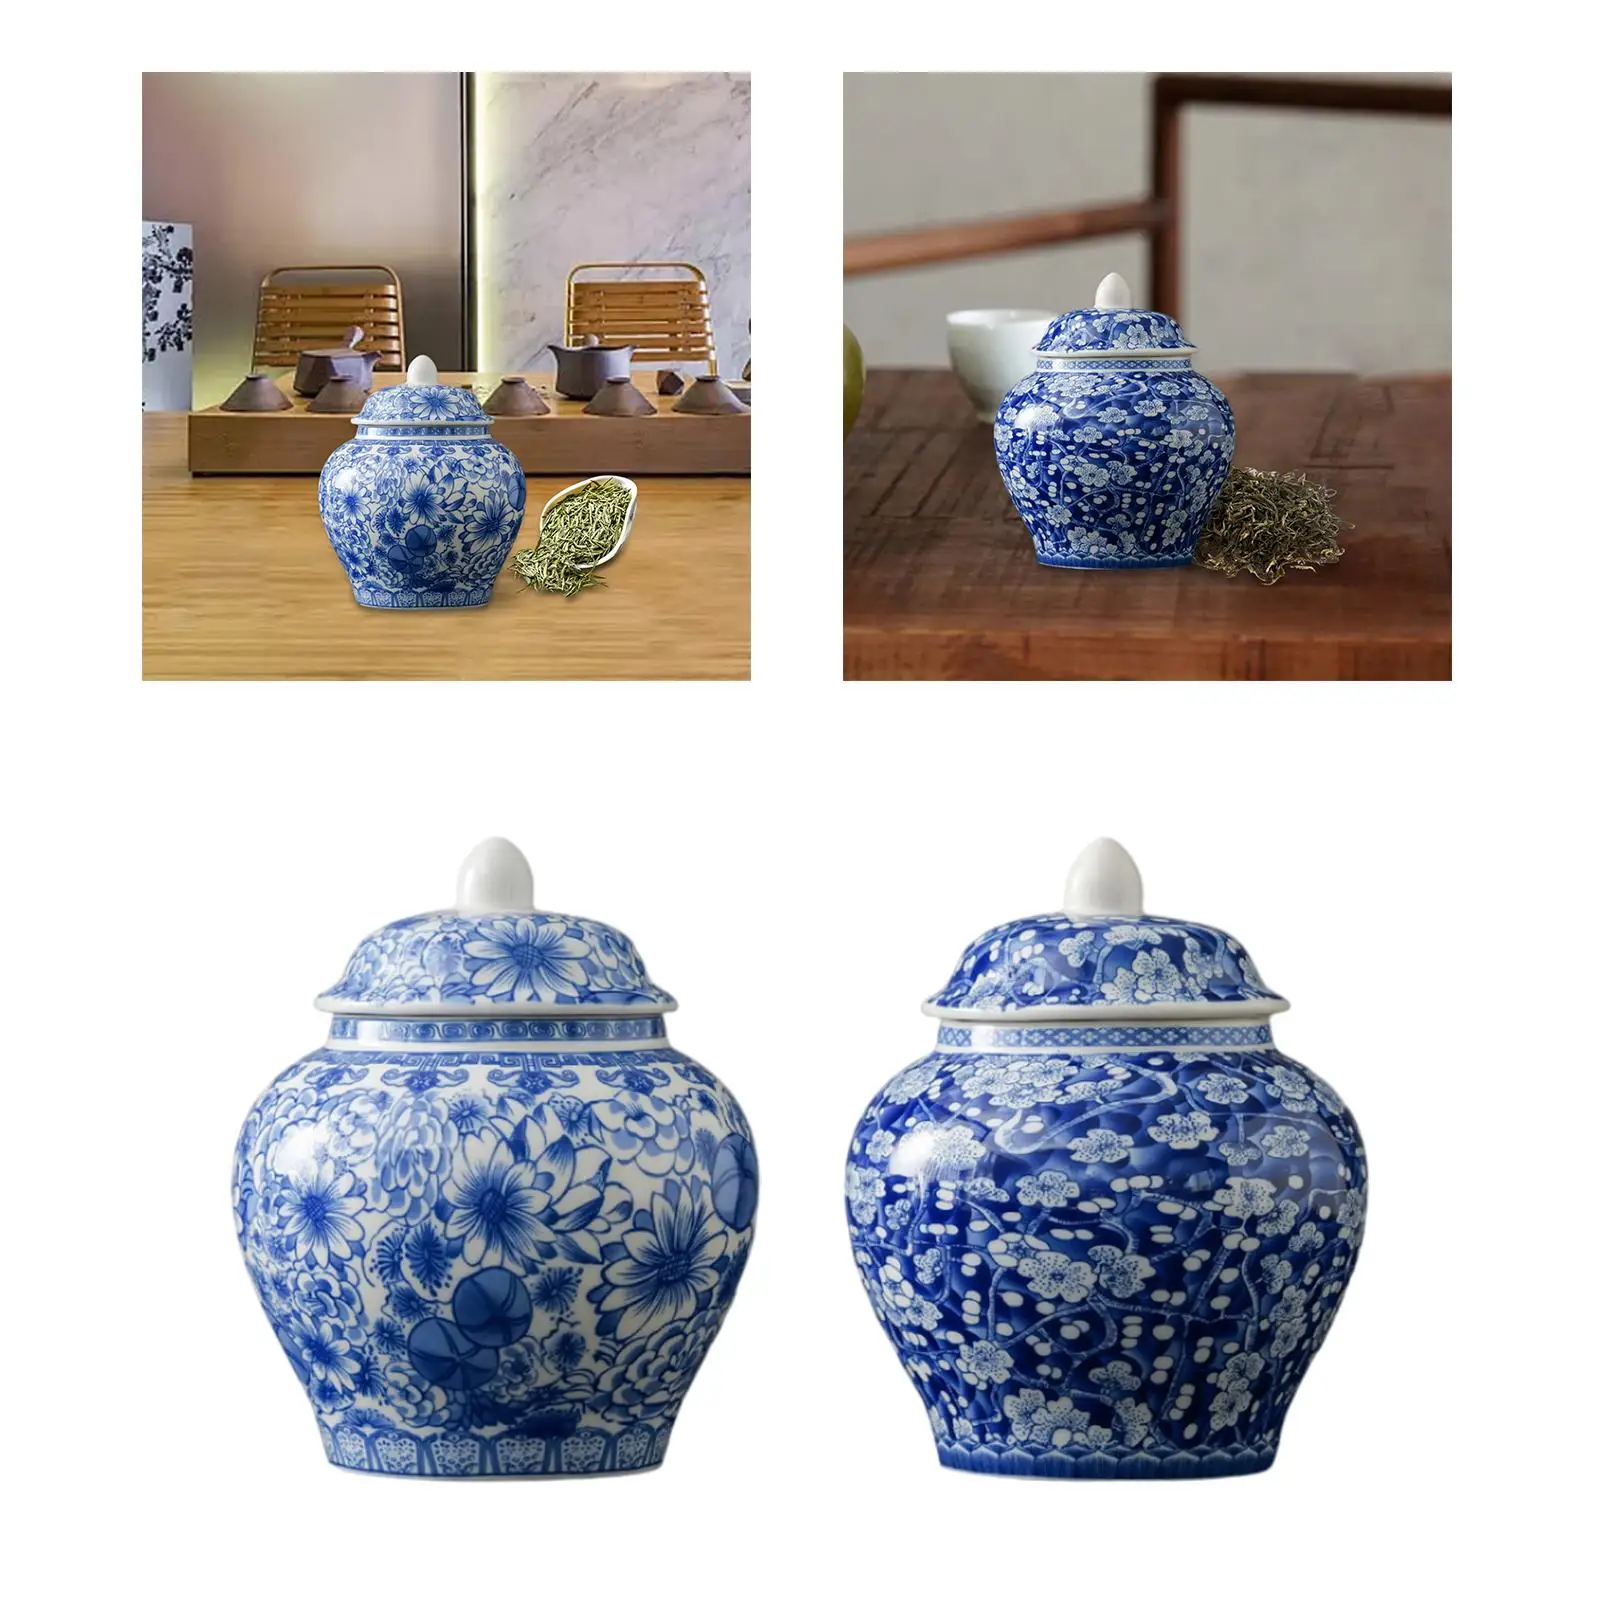 Blue and White Porcelain Ginger Jar Indoor Weddings Desktop Arrangement Versatile Home Floral Office Chinese Decorative Vase